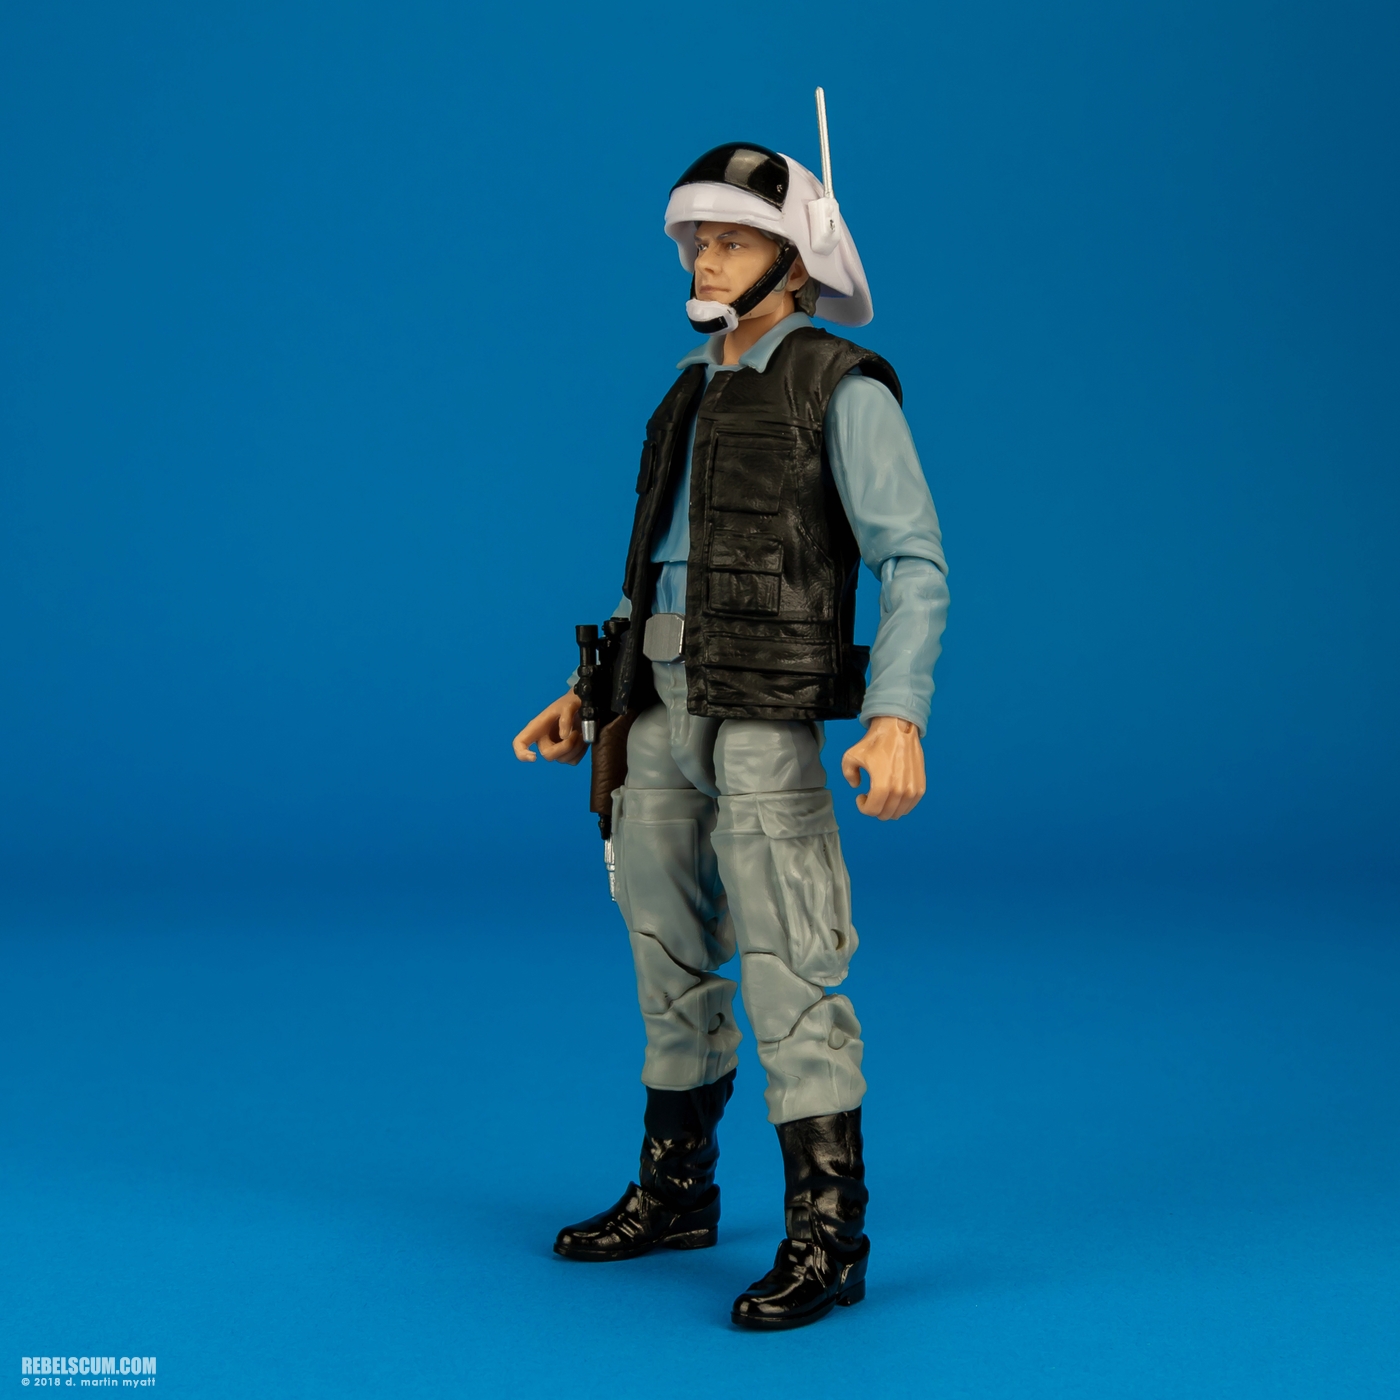 Rebel_Trooper-69-Star-Wars-The-Black-Series-6-inch-Hasbro-003.jpg